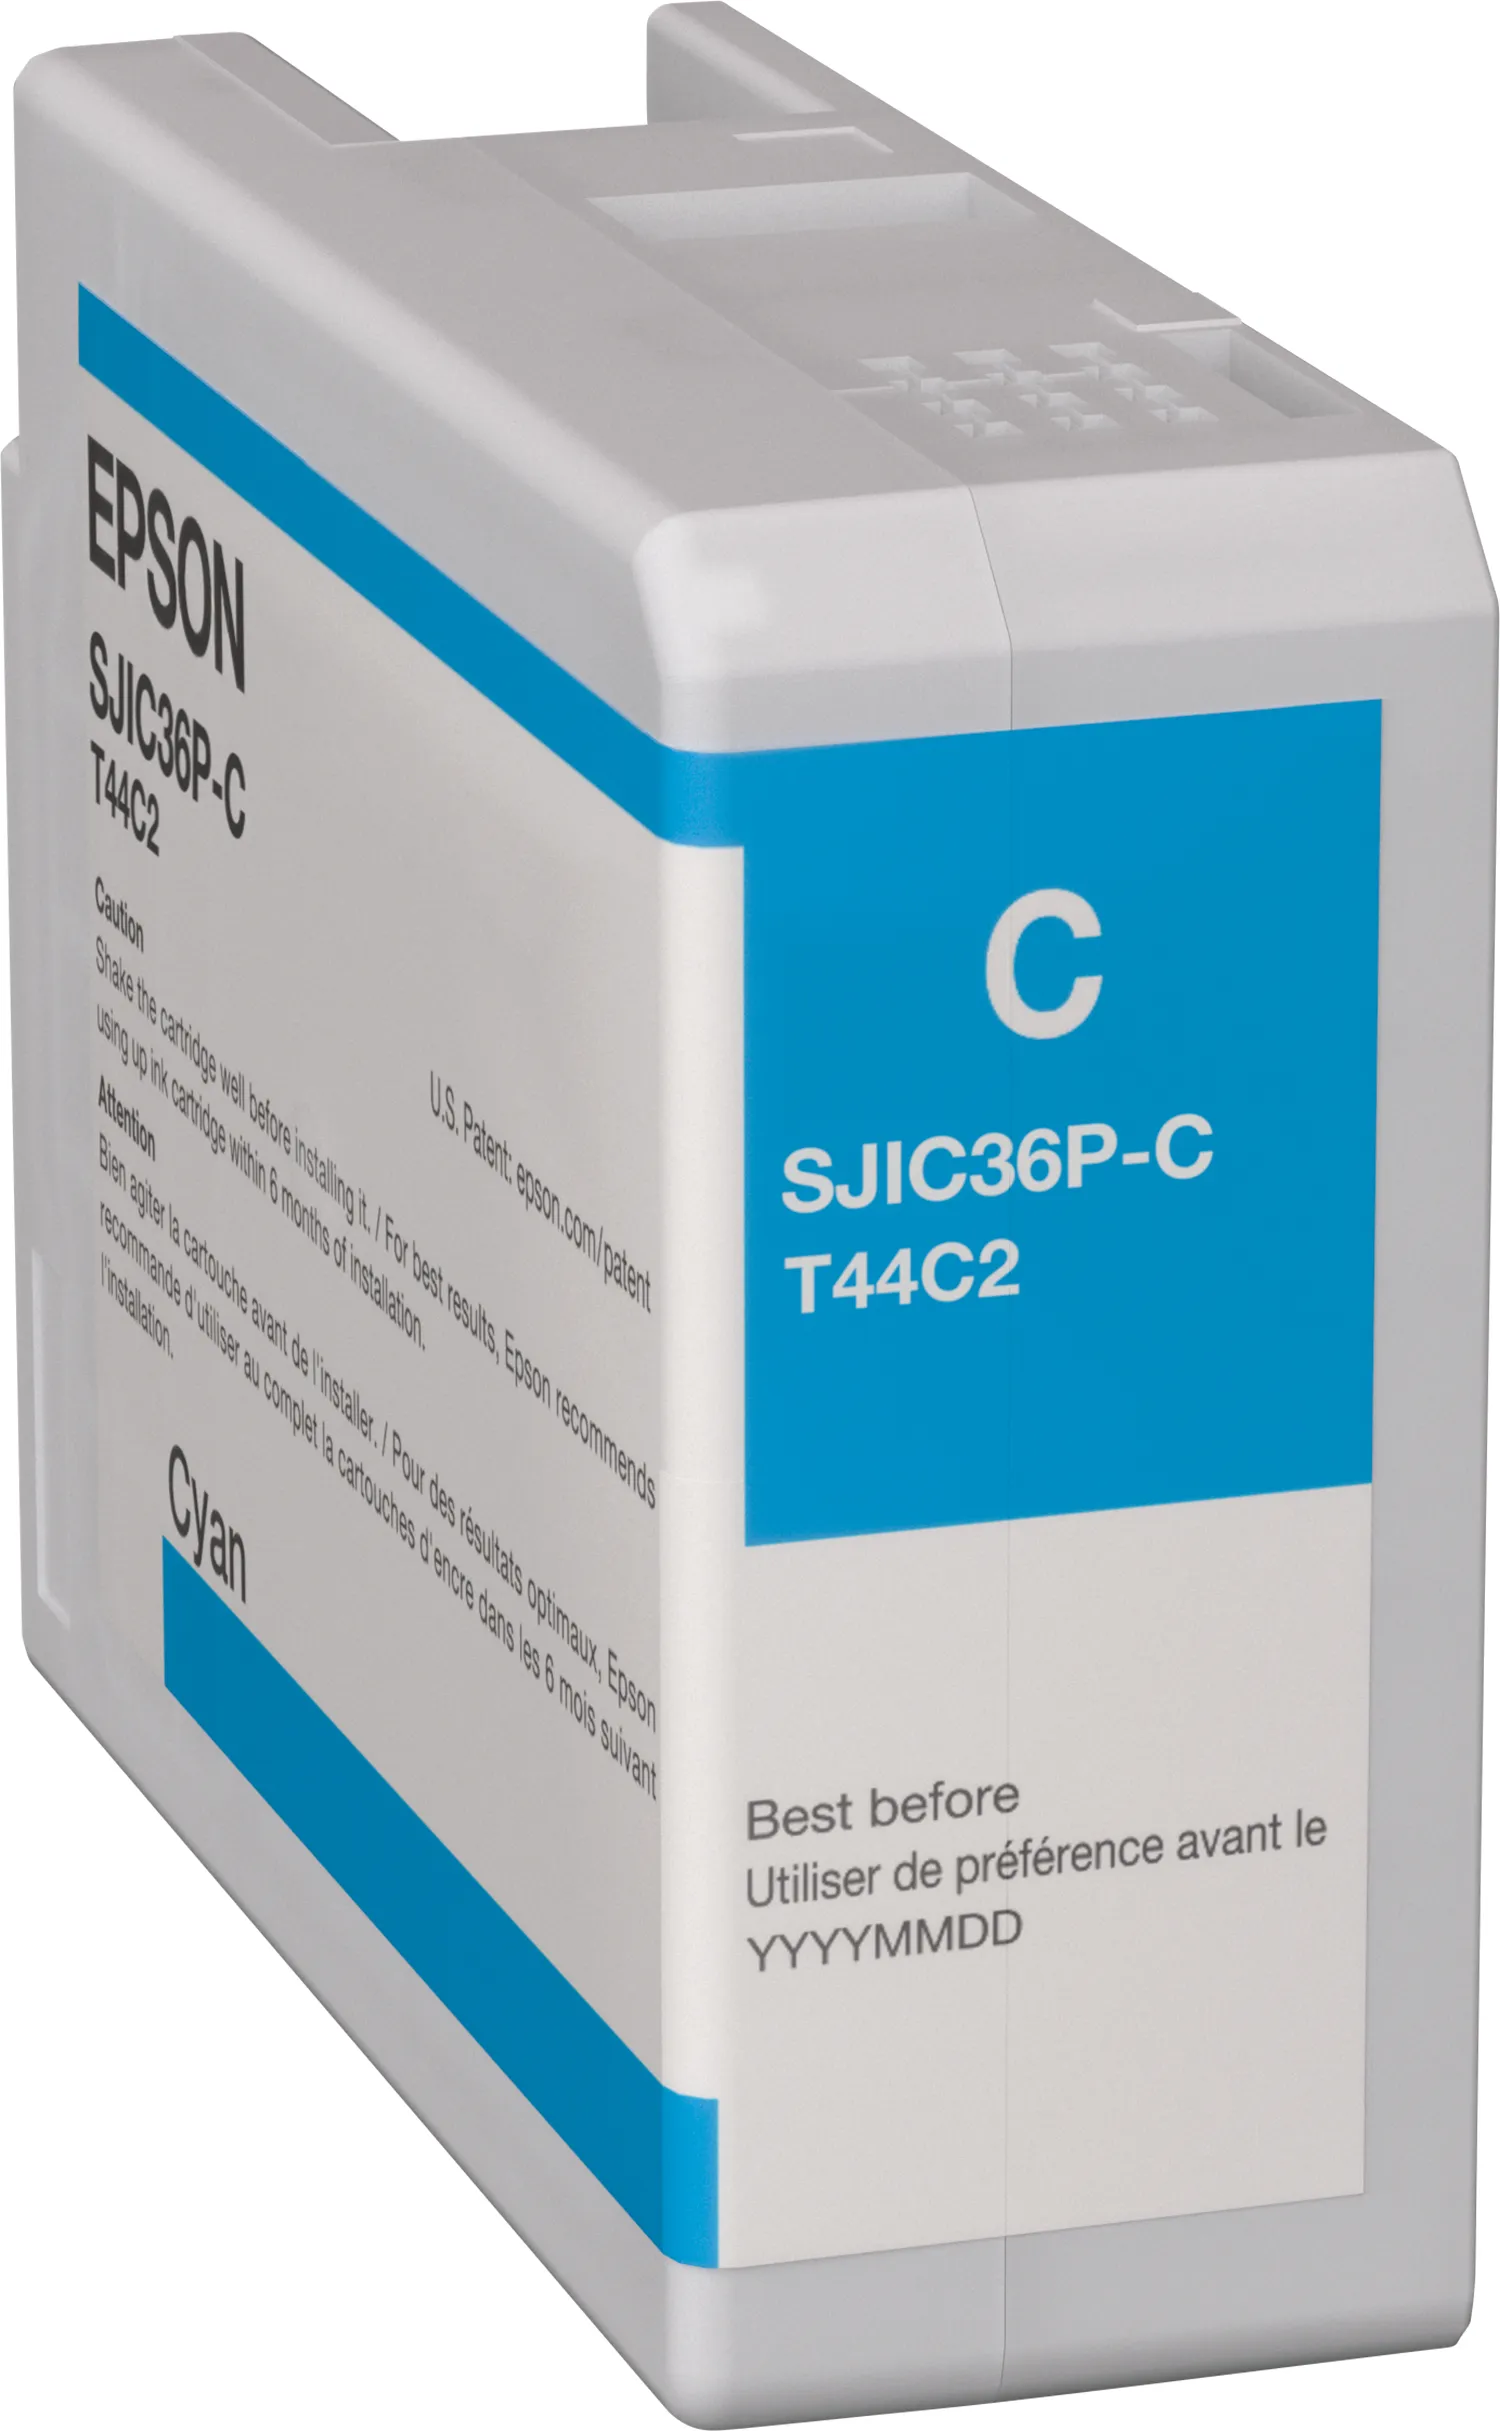 Revendeur officiel Cartouches d'encre Epson SJIC36P(C): Ink cartridge for ColorWorks C6500/C6000